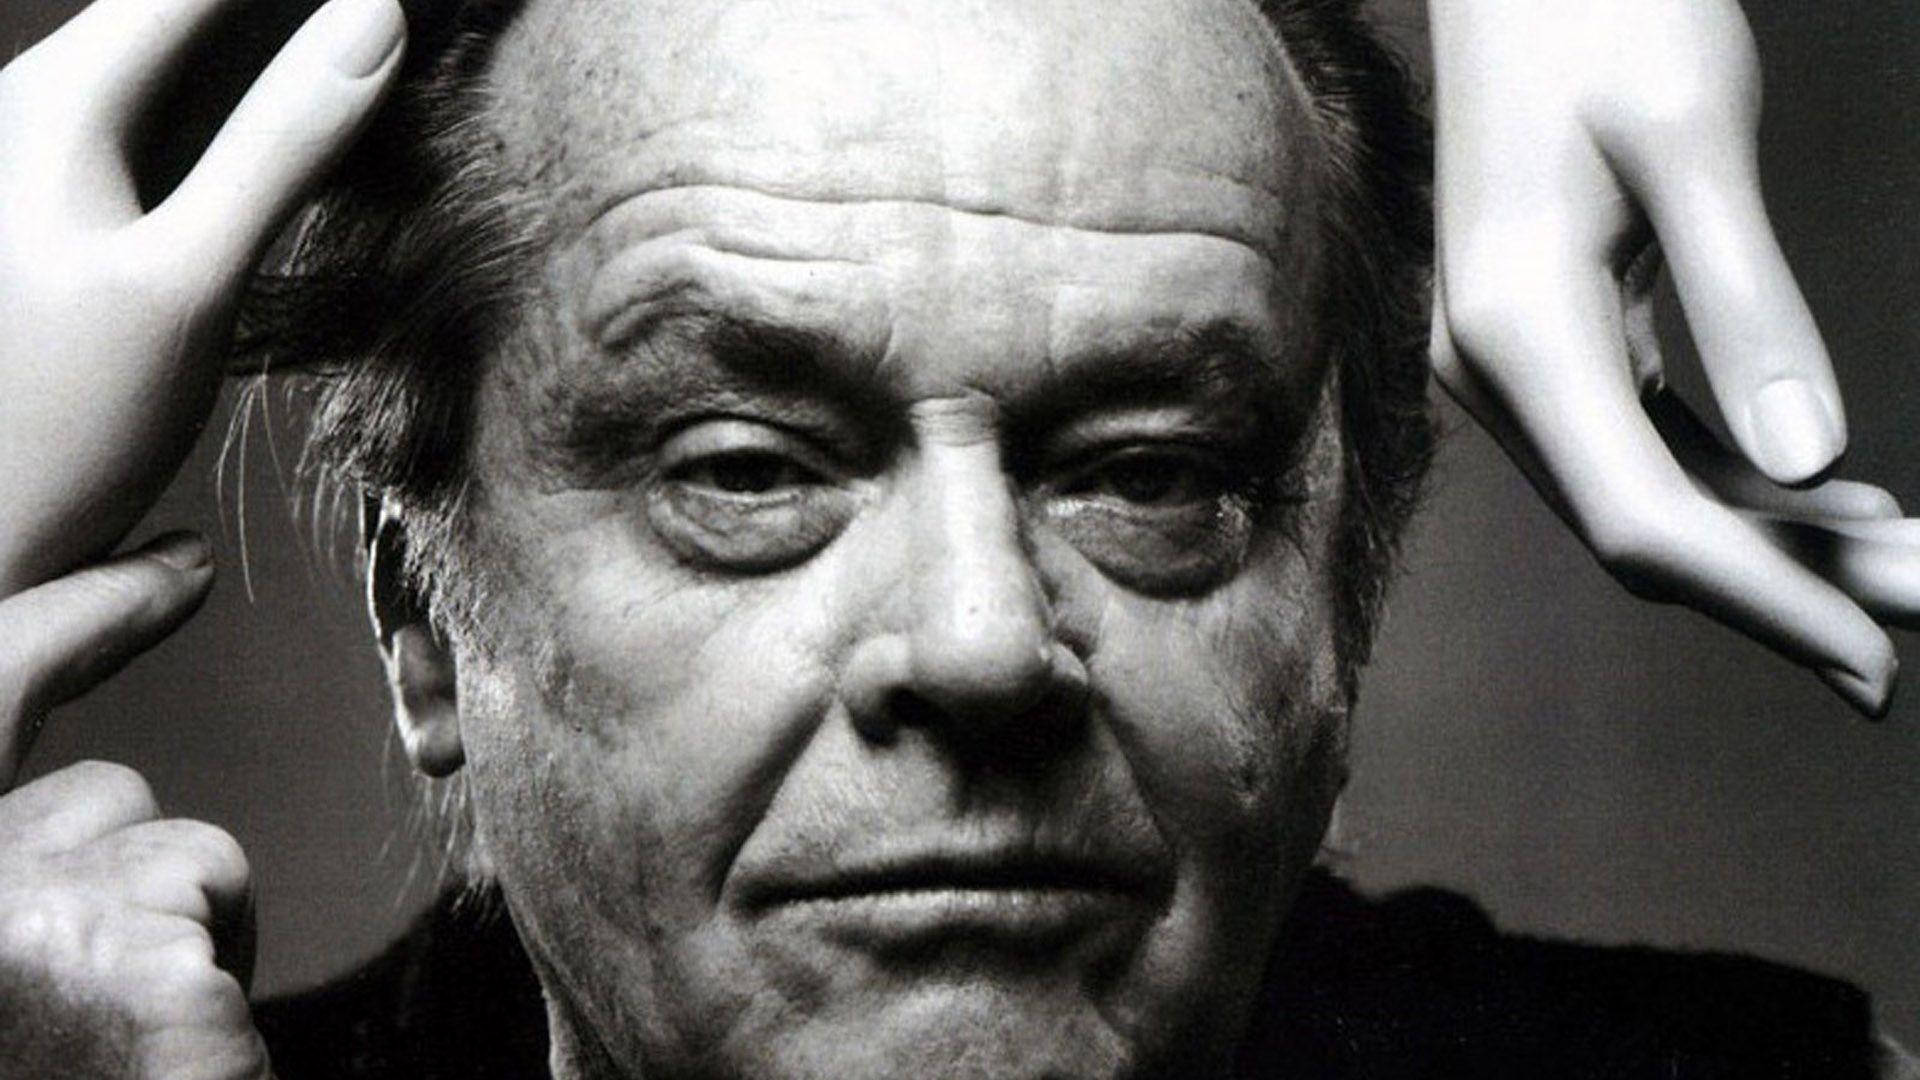 Jack Nicholson Iconic Portrait Photo Background